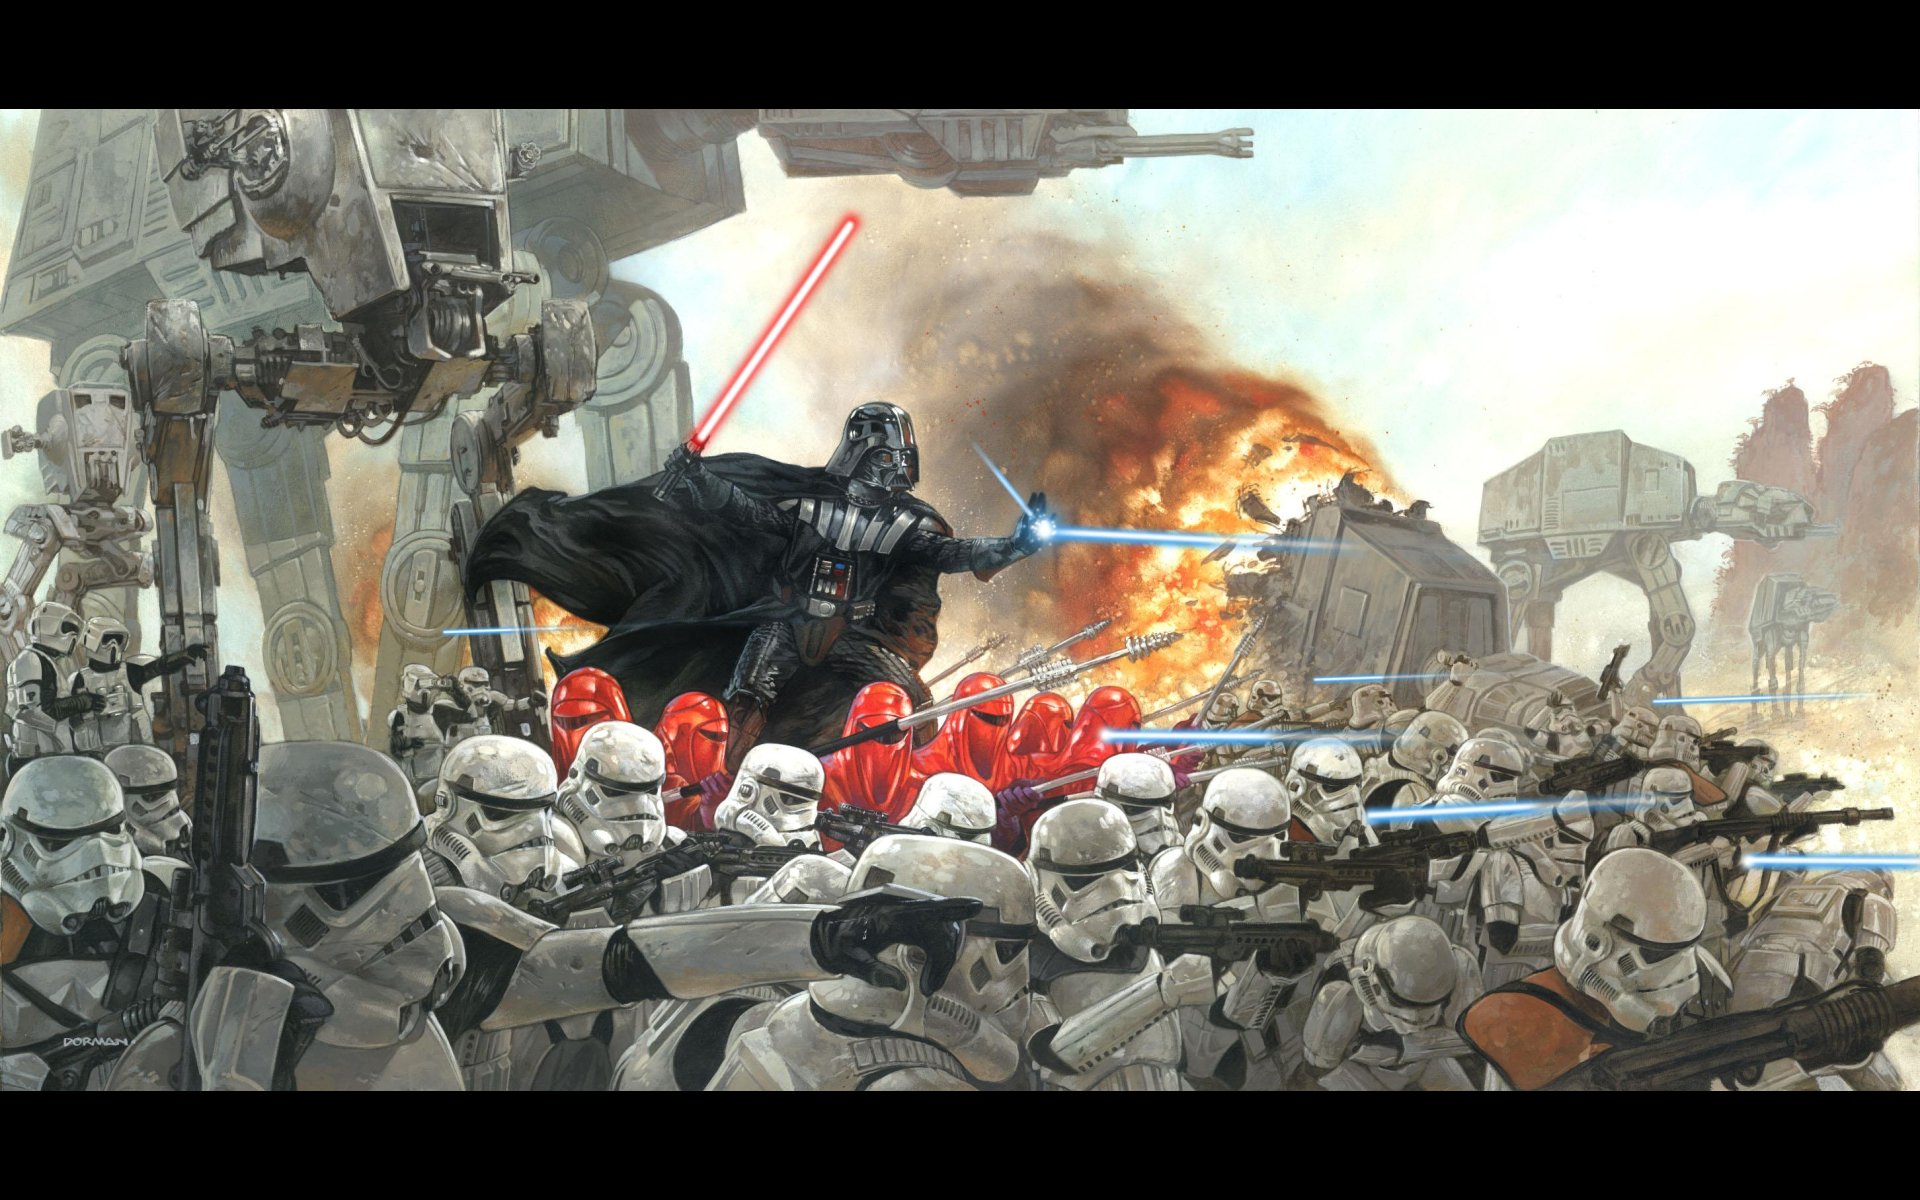 Epic Star Wars Background